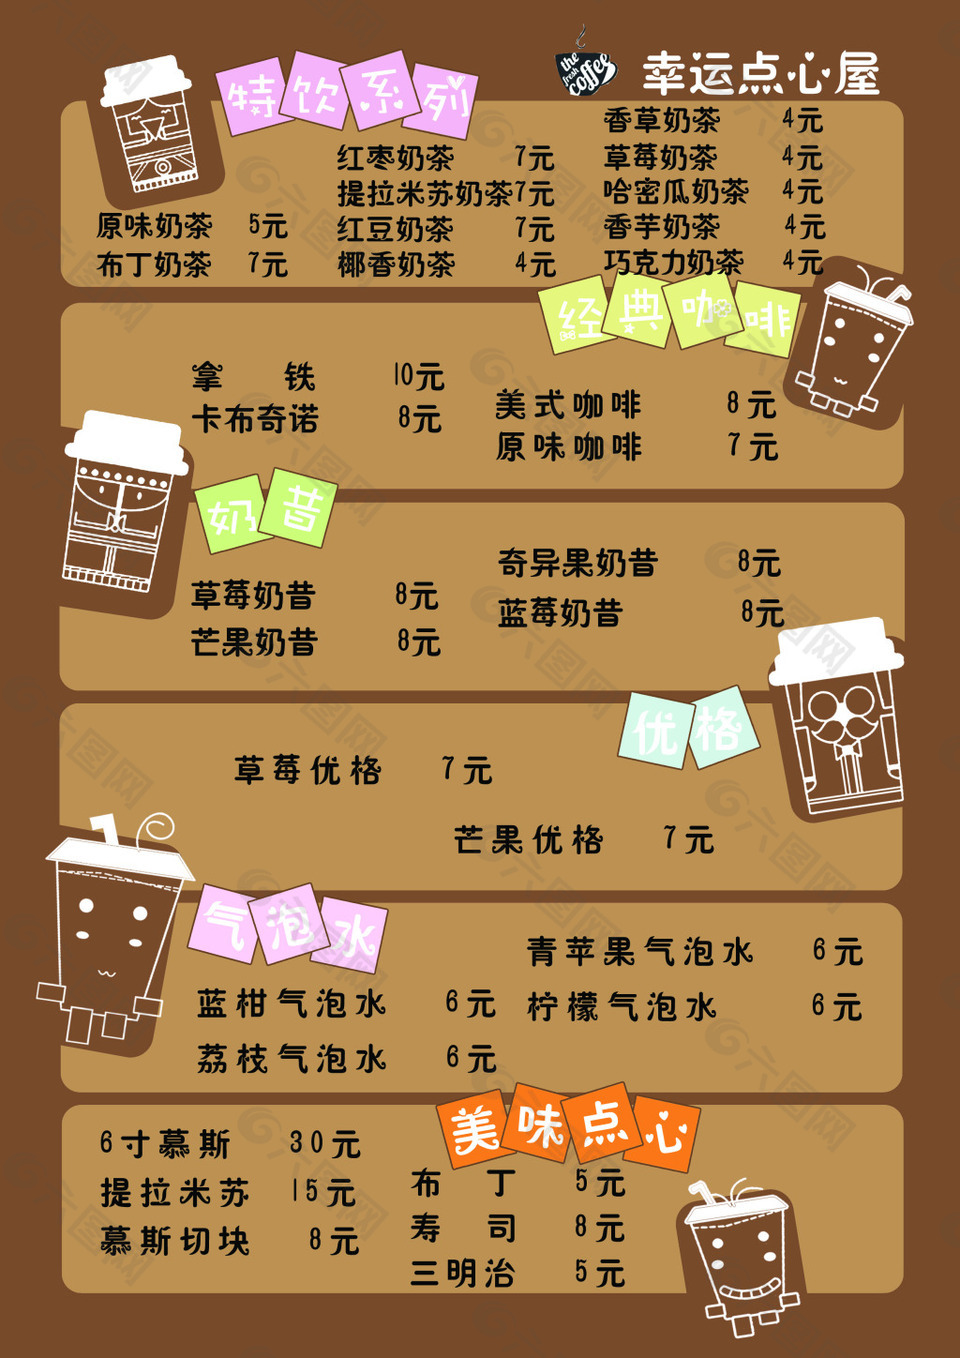 广式甜品菜单图片